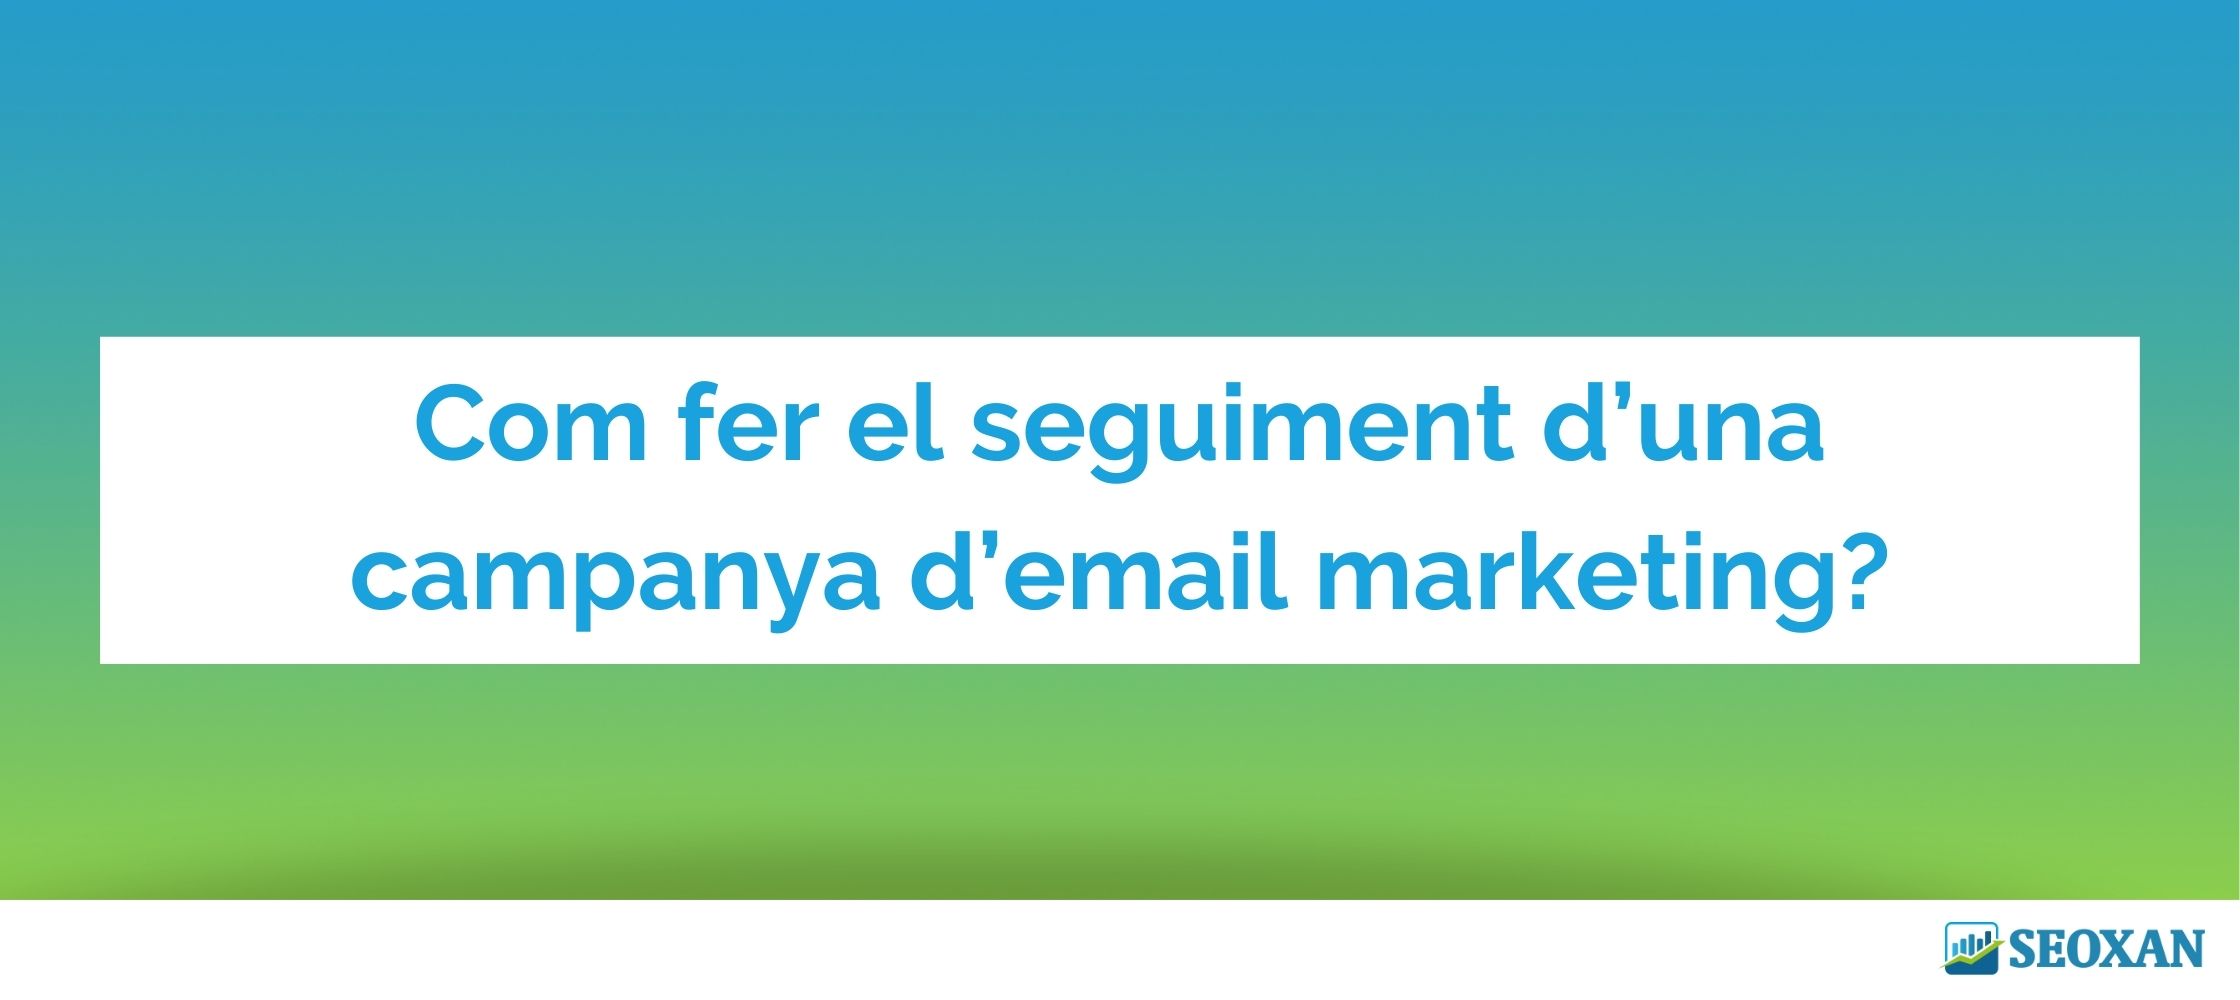 Com fer el seguiment d una campanya d email marketing???